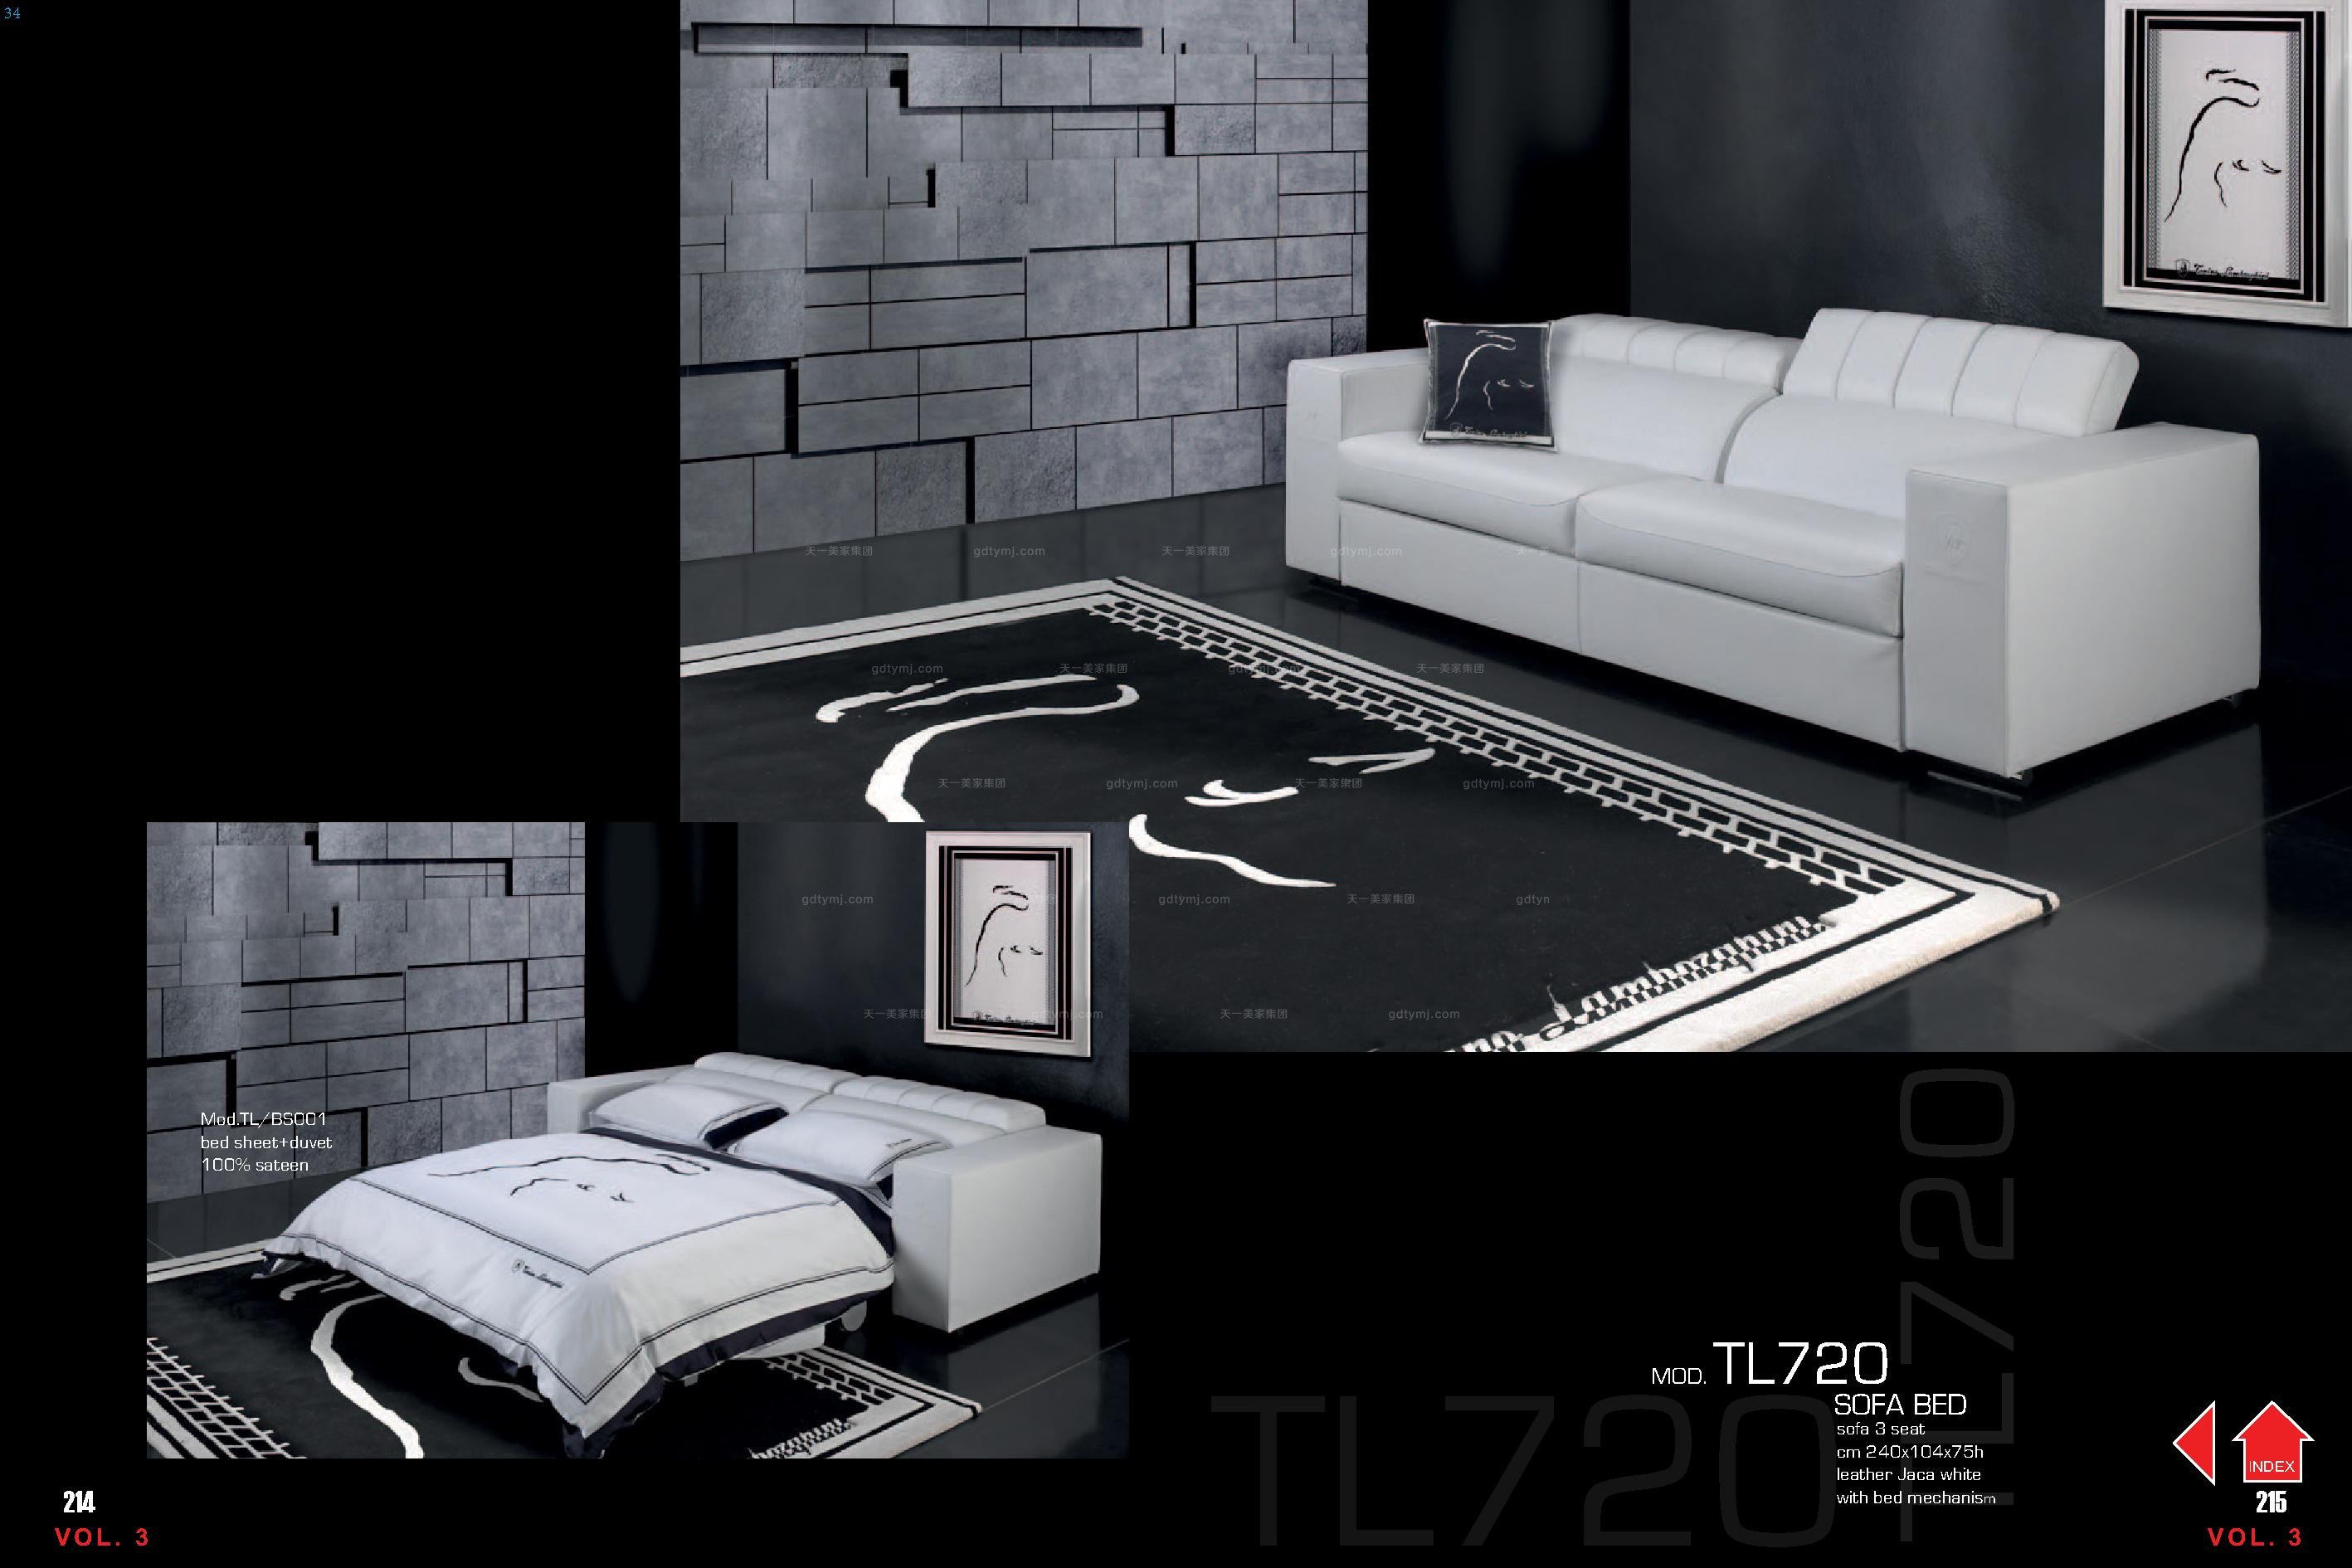 高端时尚意大利进口兰博基尼系列真皮多功能沙发床